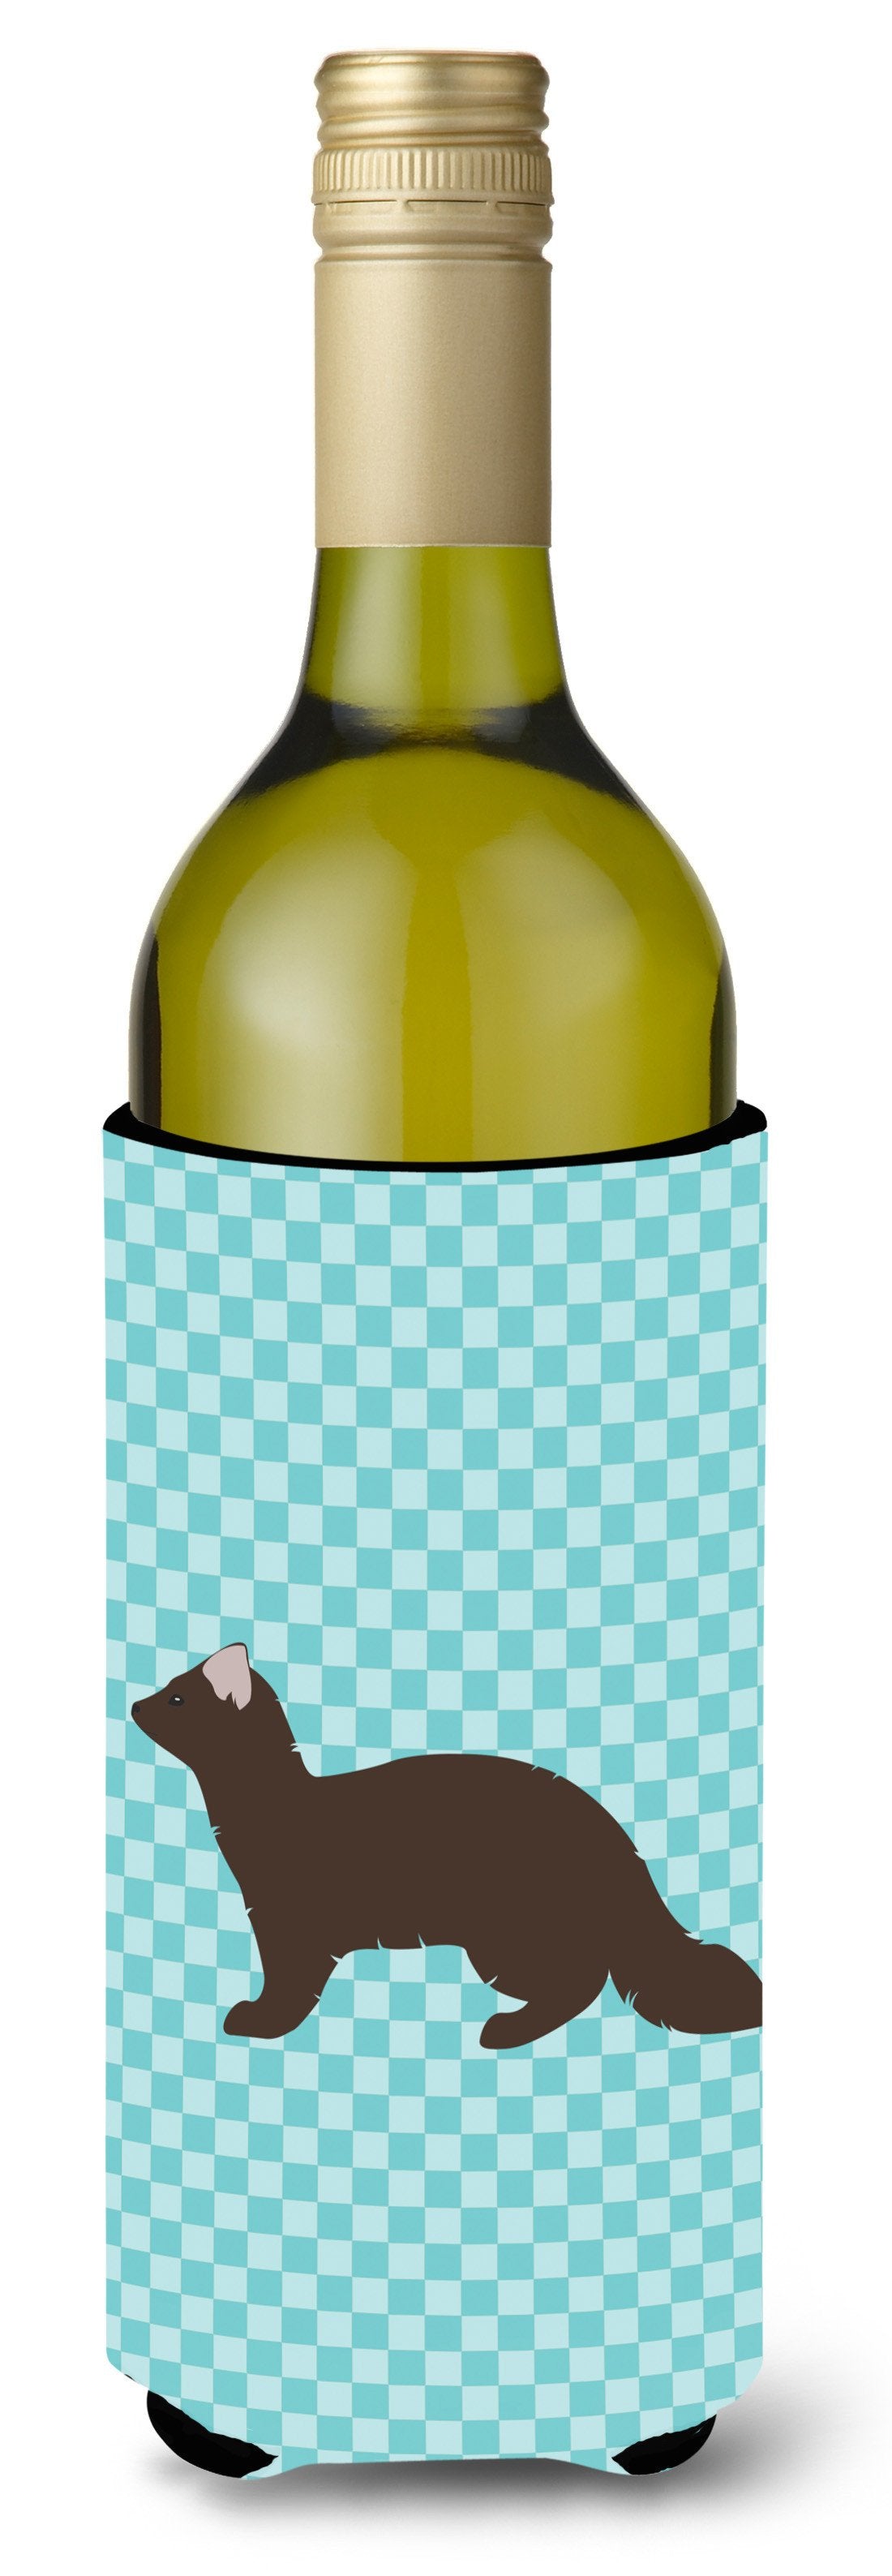 Sable Marten Blue Check Wine Bottle Beverge Insulator Hugger BB8043LITERK by Caroline's Treasures